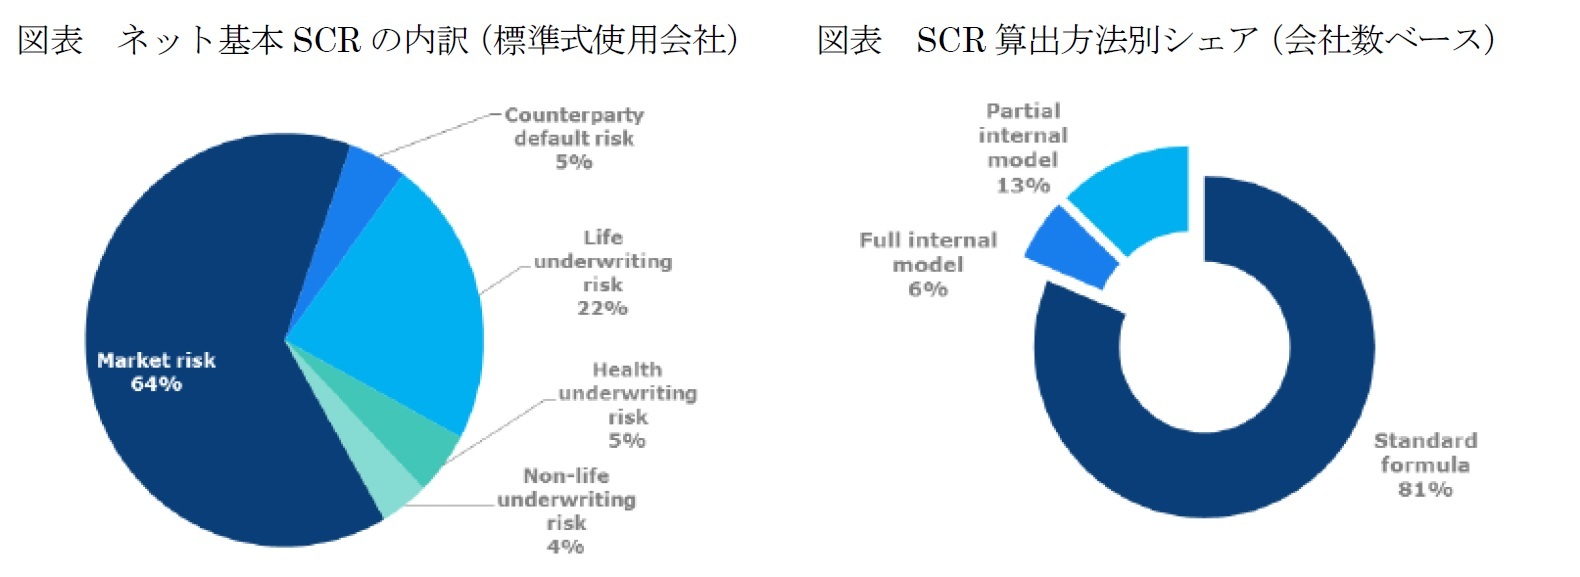 図表　ネット基本SCRの内訳（標準式使用会社）/図表　SCR算出方法による会社別シェア